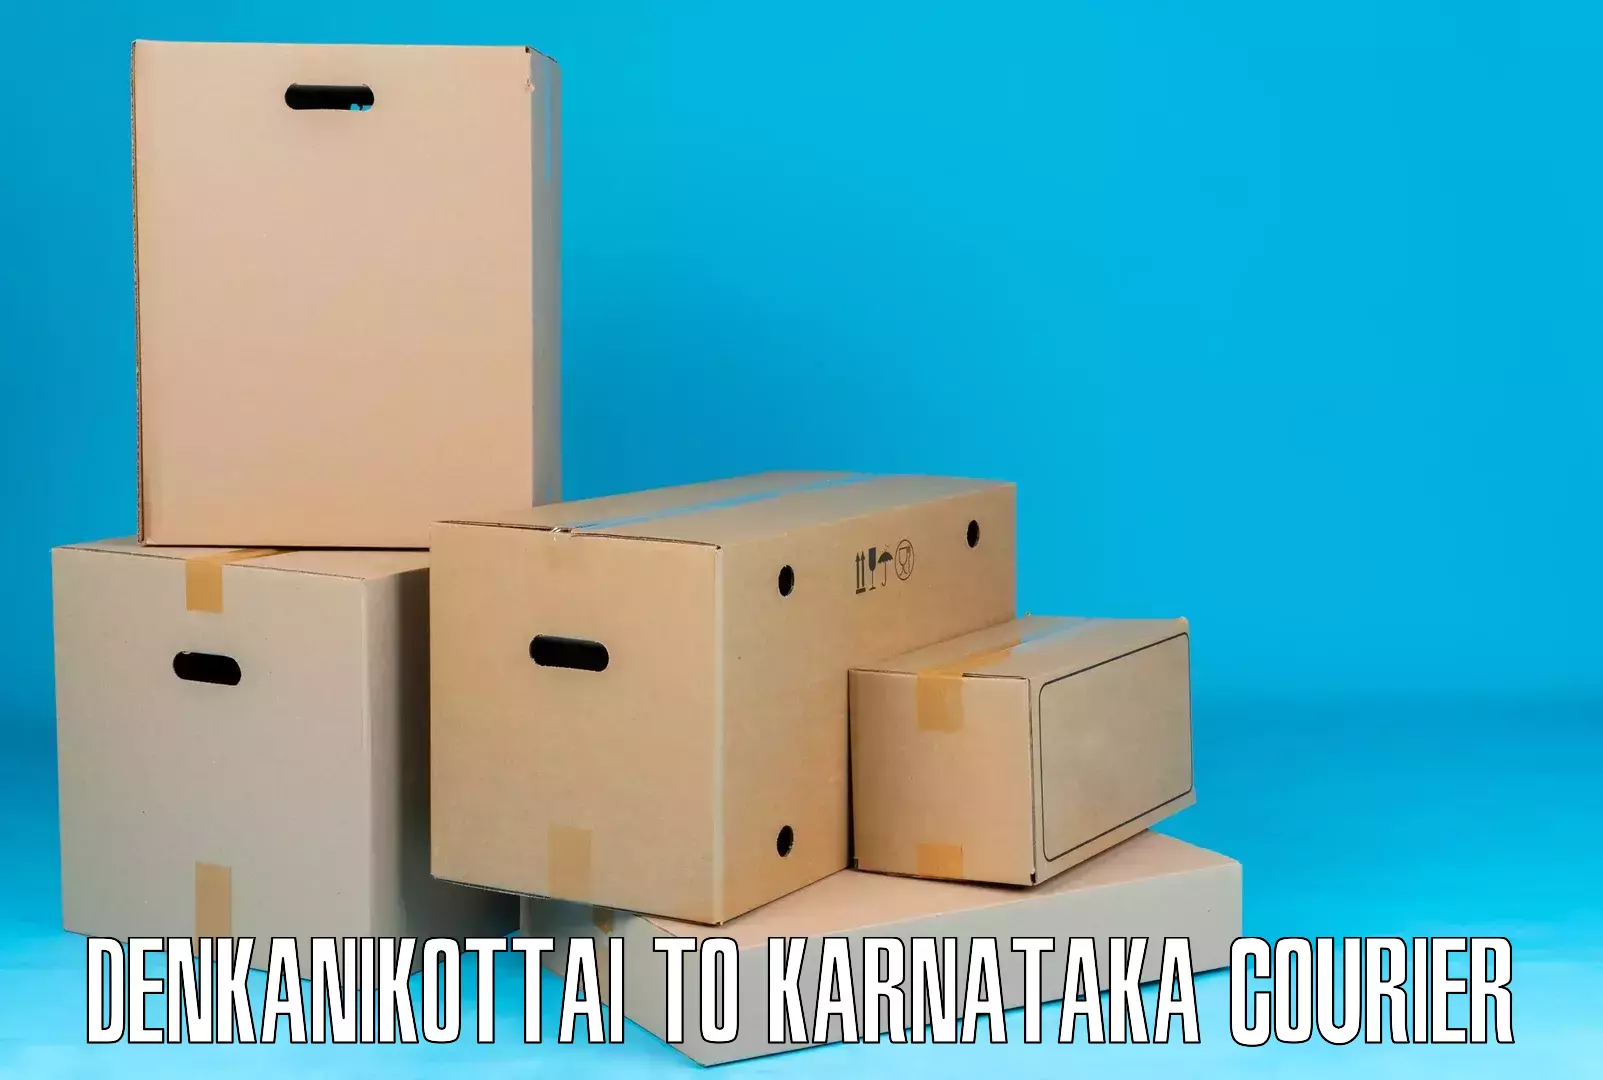 Professional courier services in Denkanikottai to Jalahalli